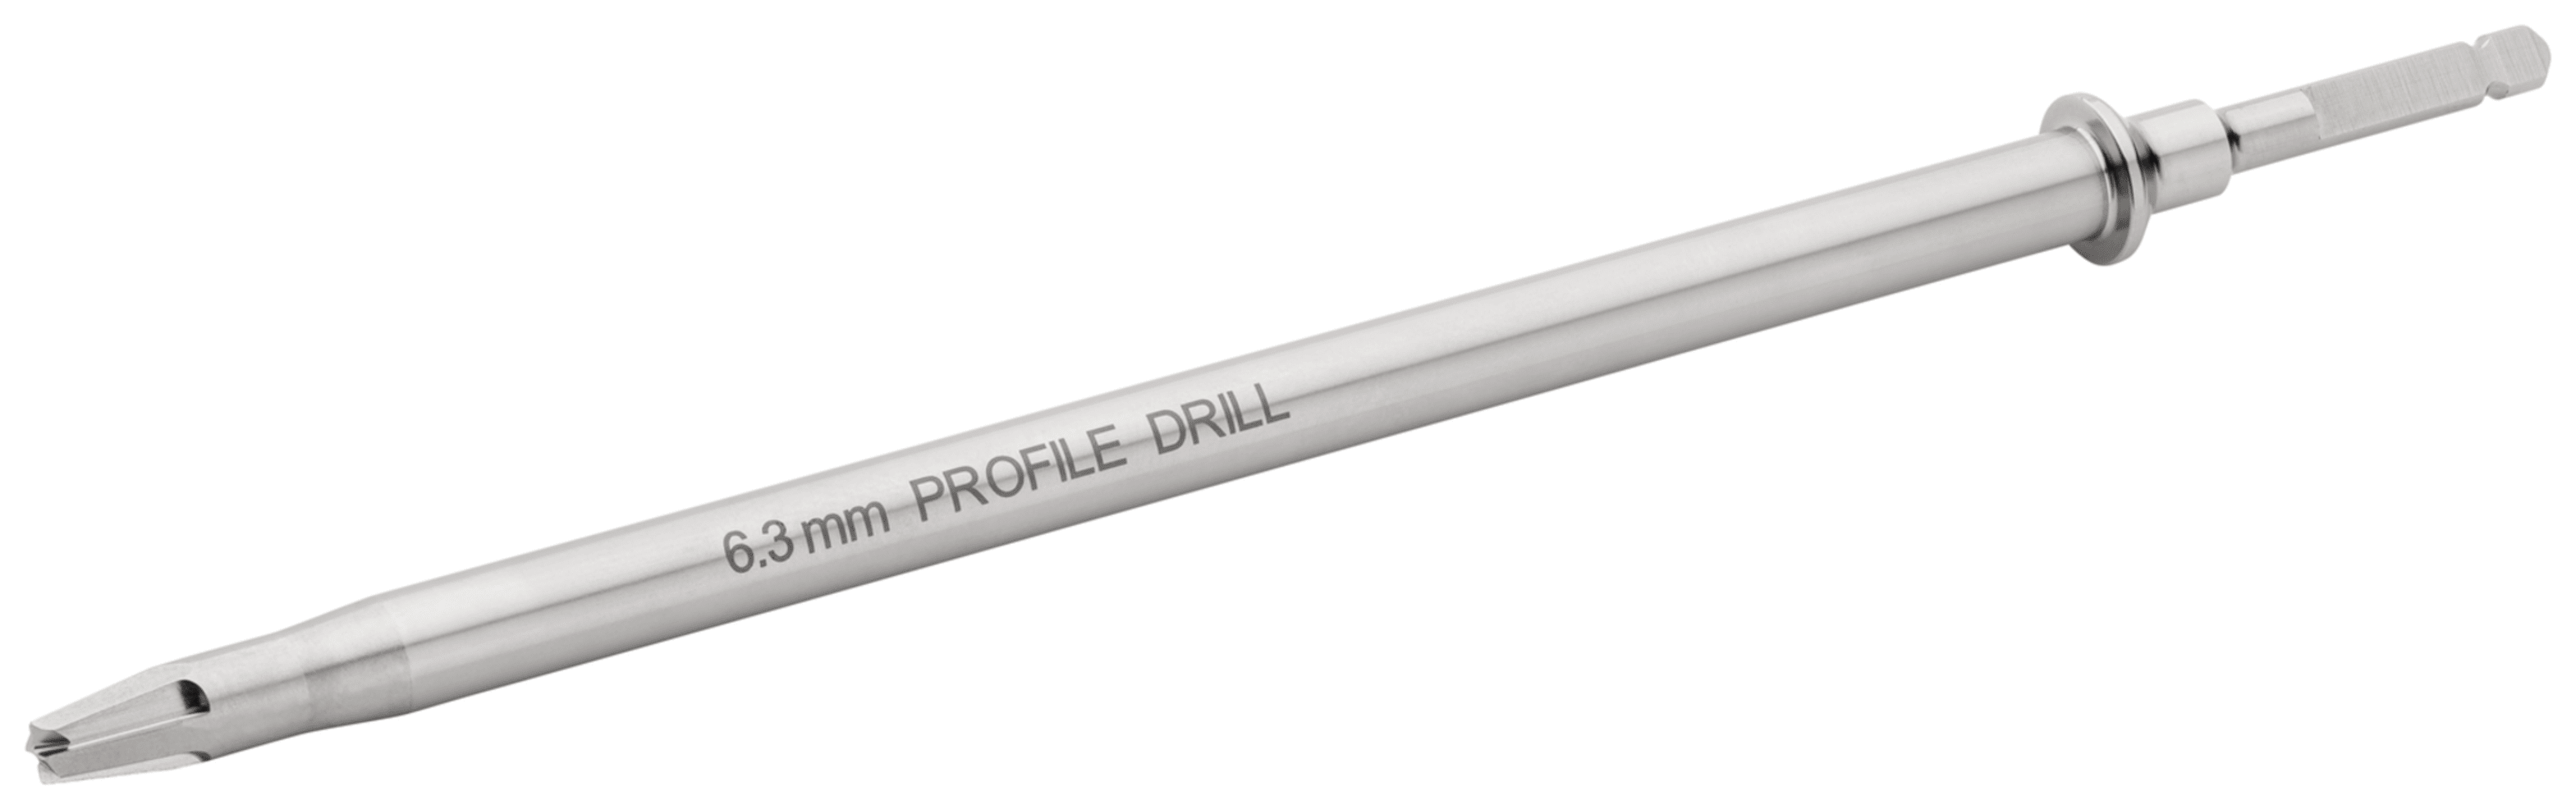 Profile Drill, 6.3 mm